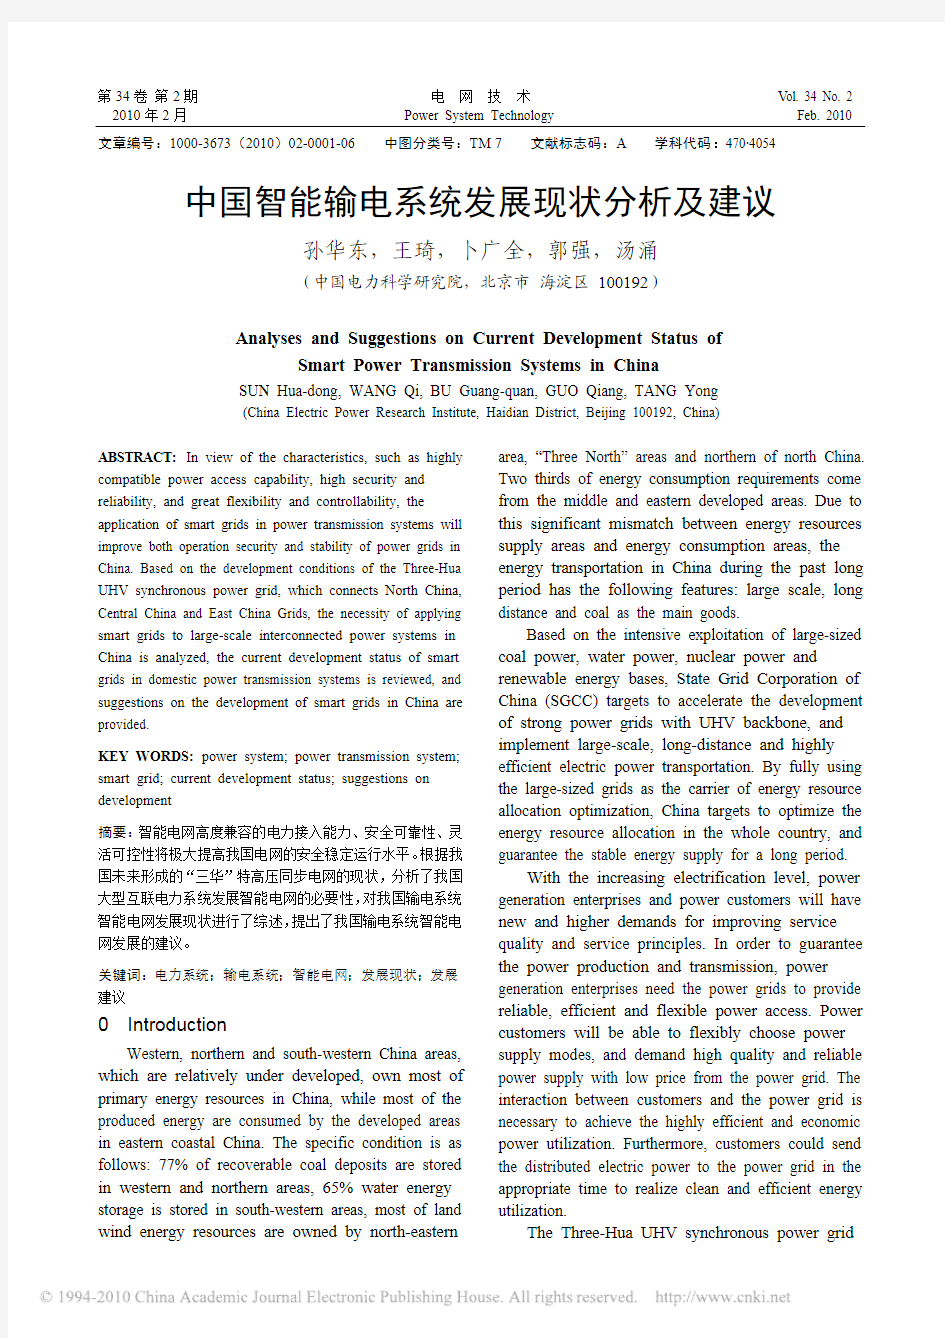 中国智能输电系统发展现状分析及建议_英文_